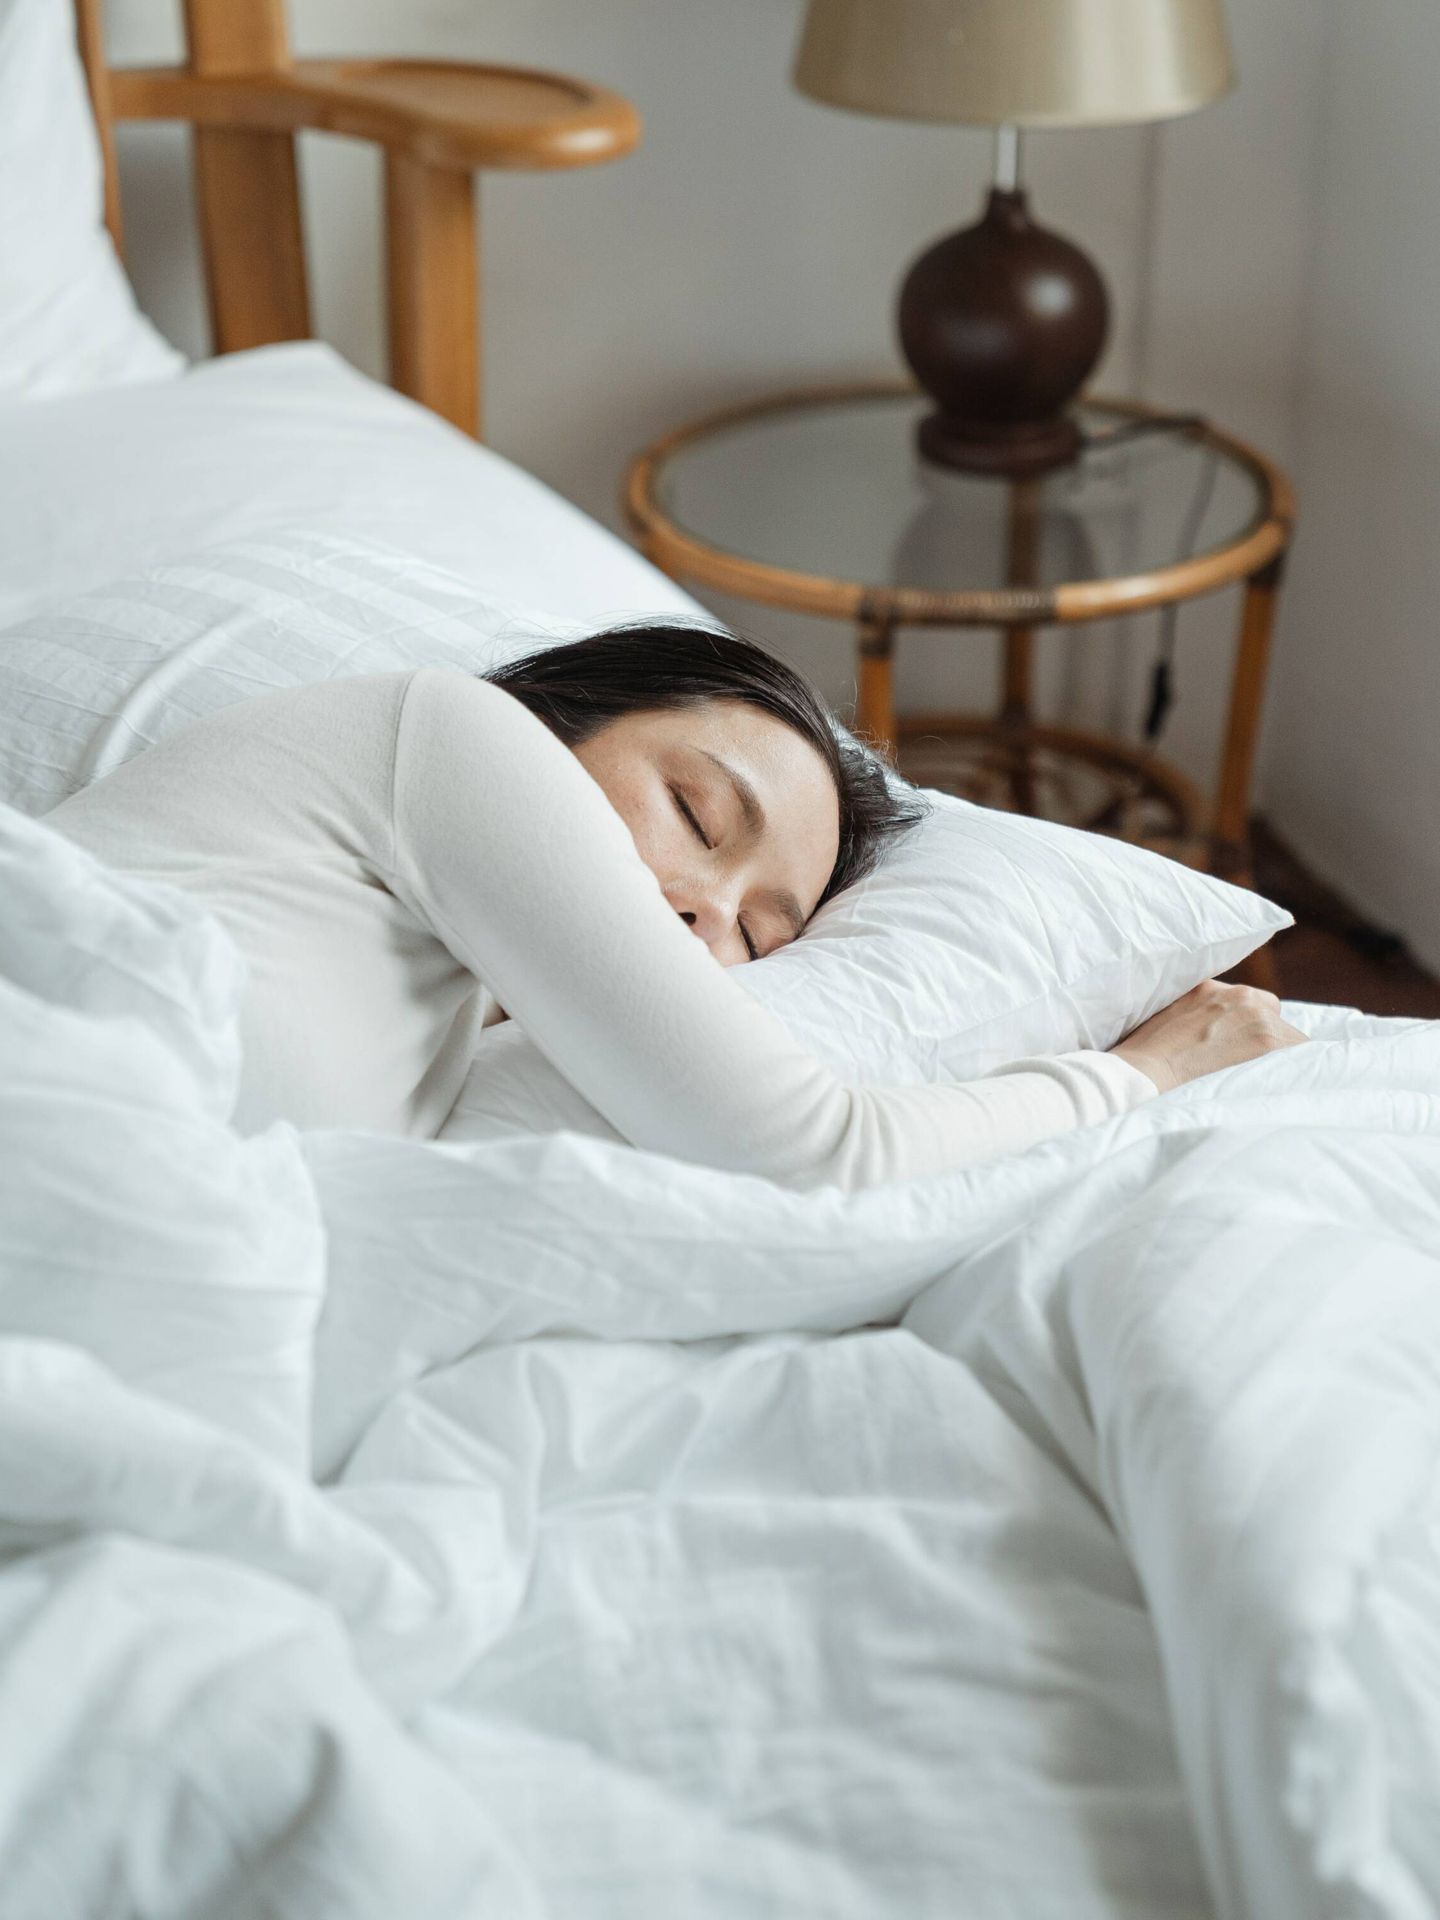 Dormir la siesta tiene muchos beneficios. (Pexels/ Ketut Subiyanto)